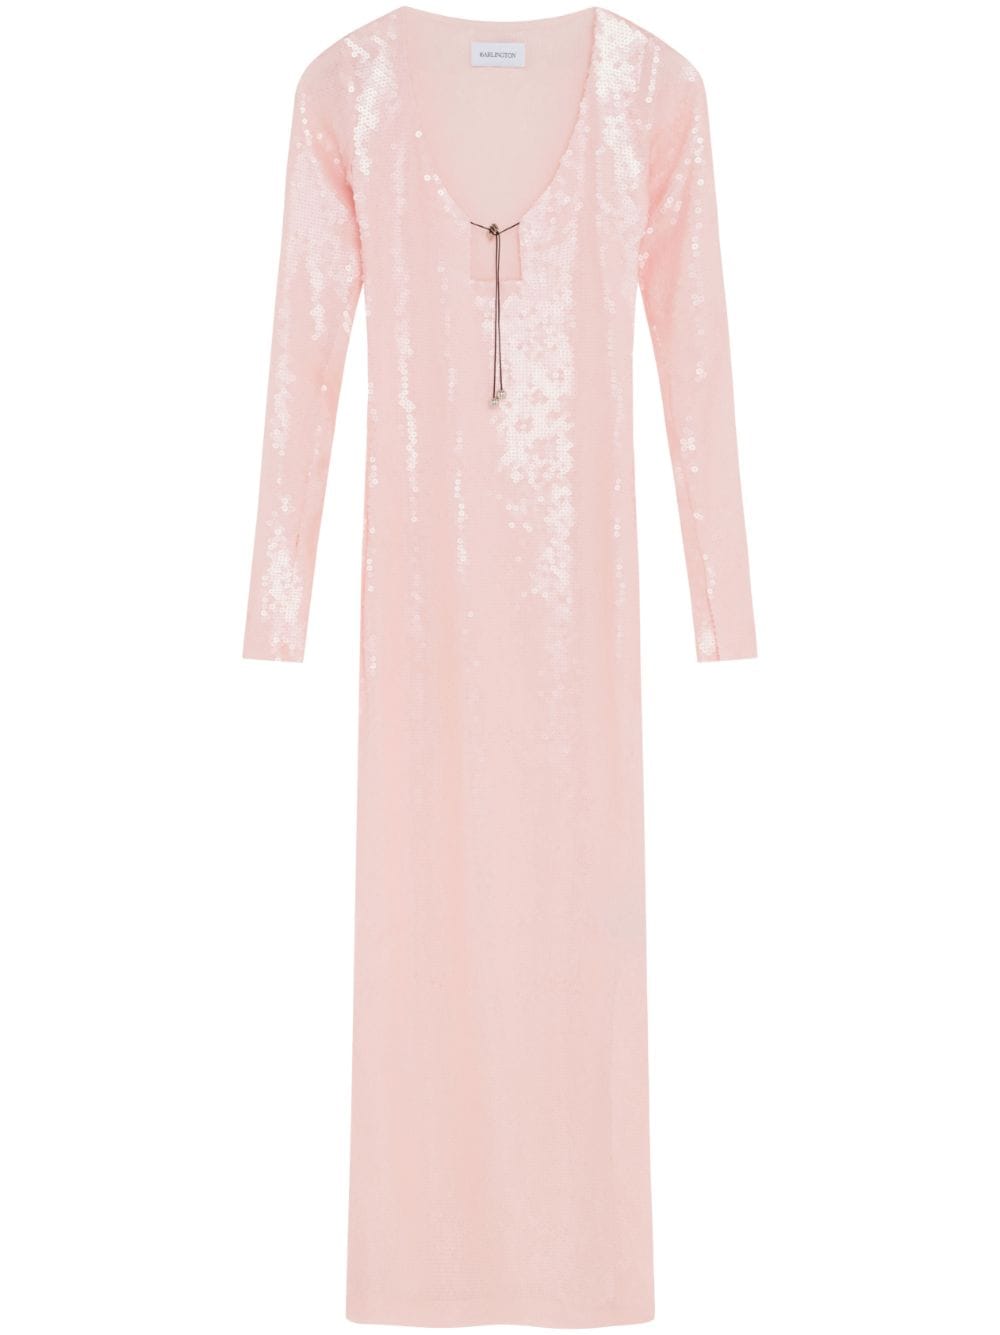 16Arlington Solaria sequin-embellished dress - Pink